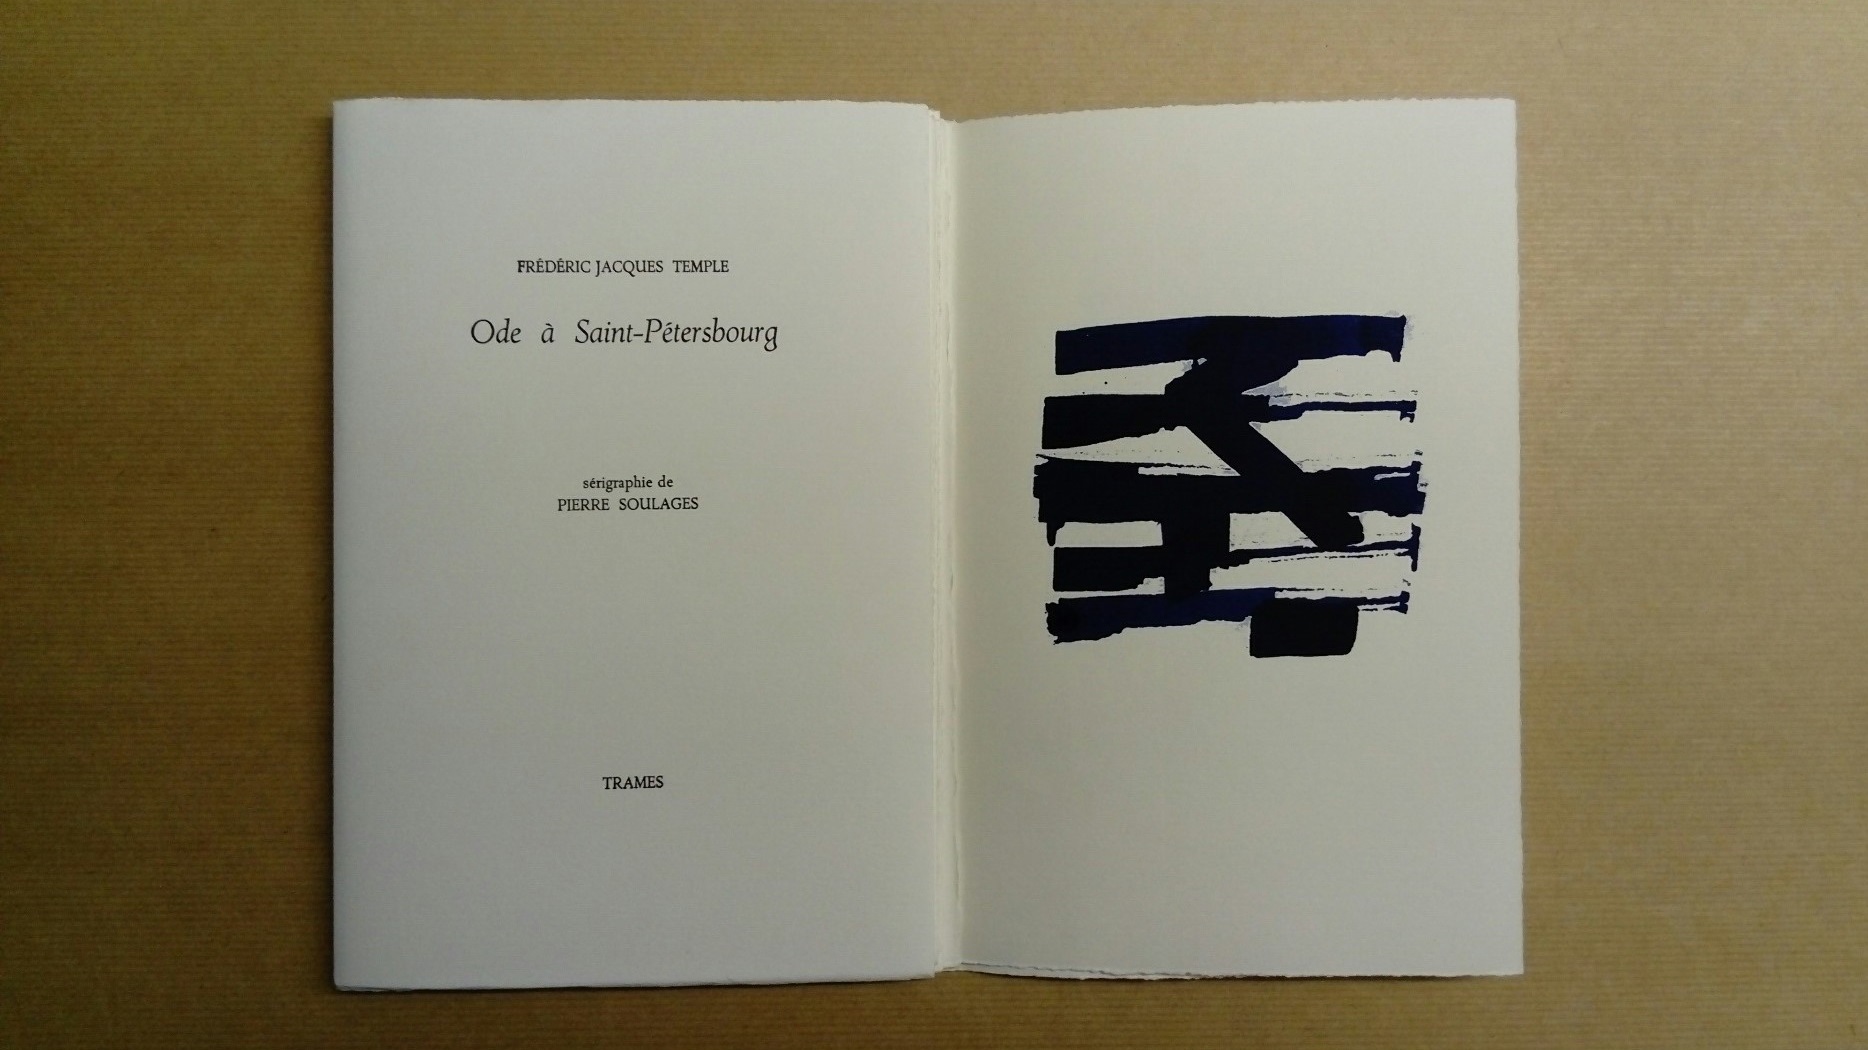 Frédéric Jacques Temple, Ode à Saint-Pétersbourg, éditions Trame, 2004 (sérigraphie de Pierre Soulages)